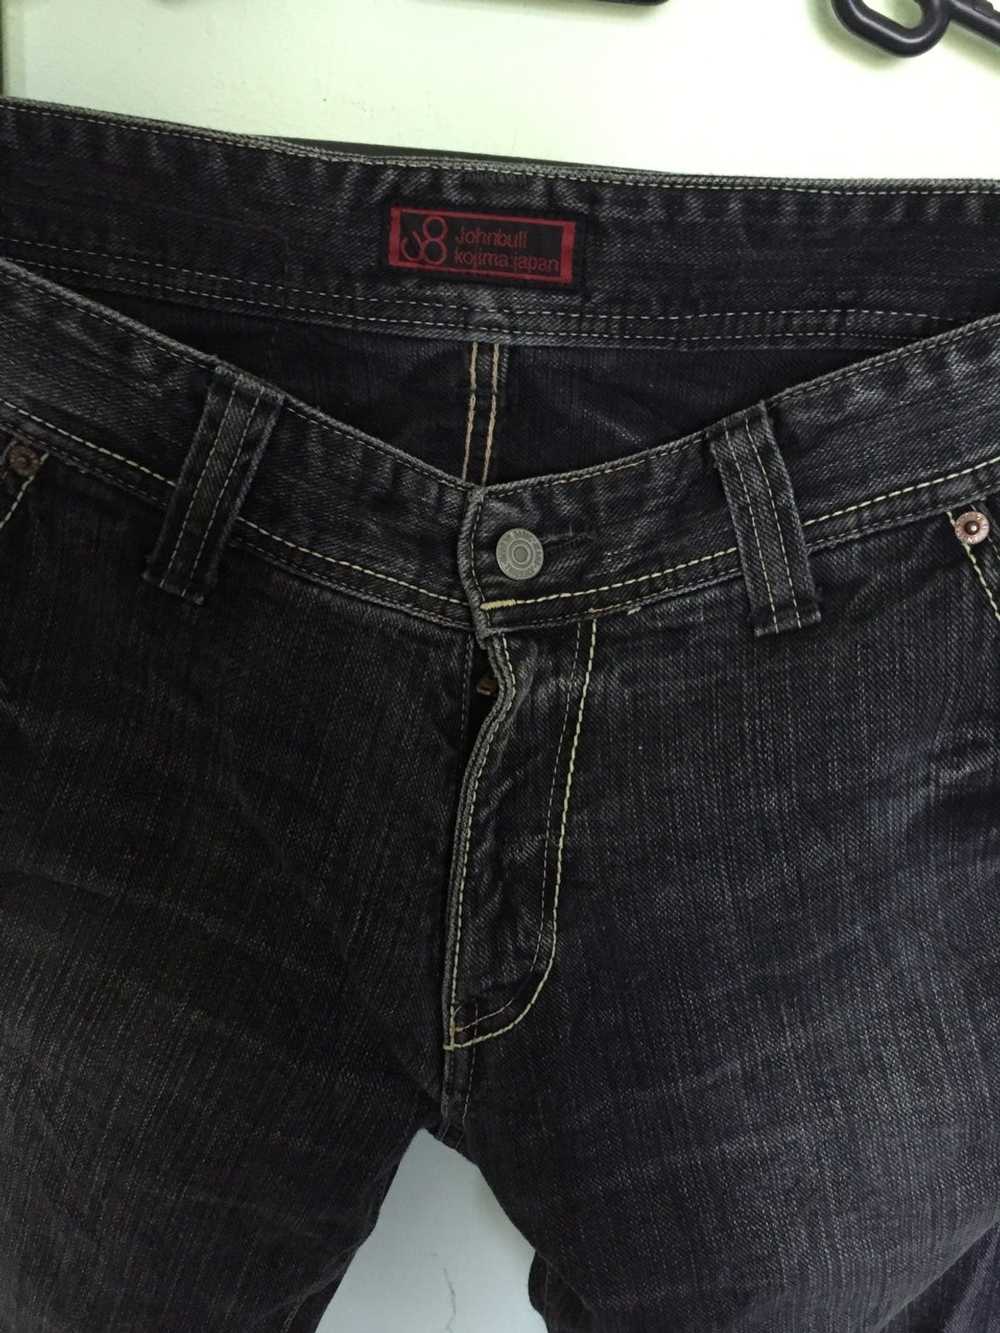 Japanese Brand × John Bull John Bull Denim Jeans - image 2